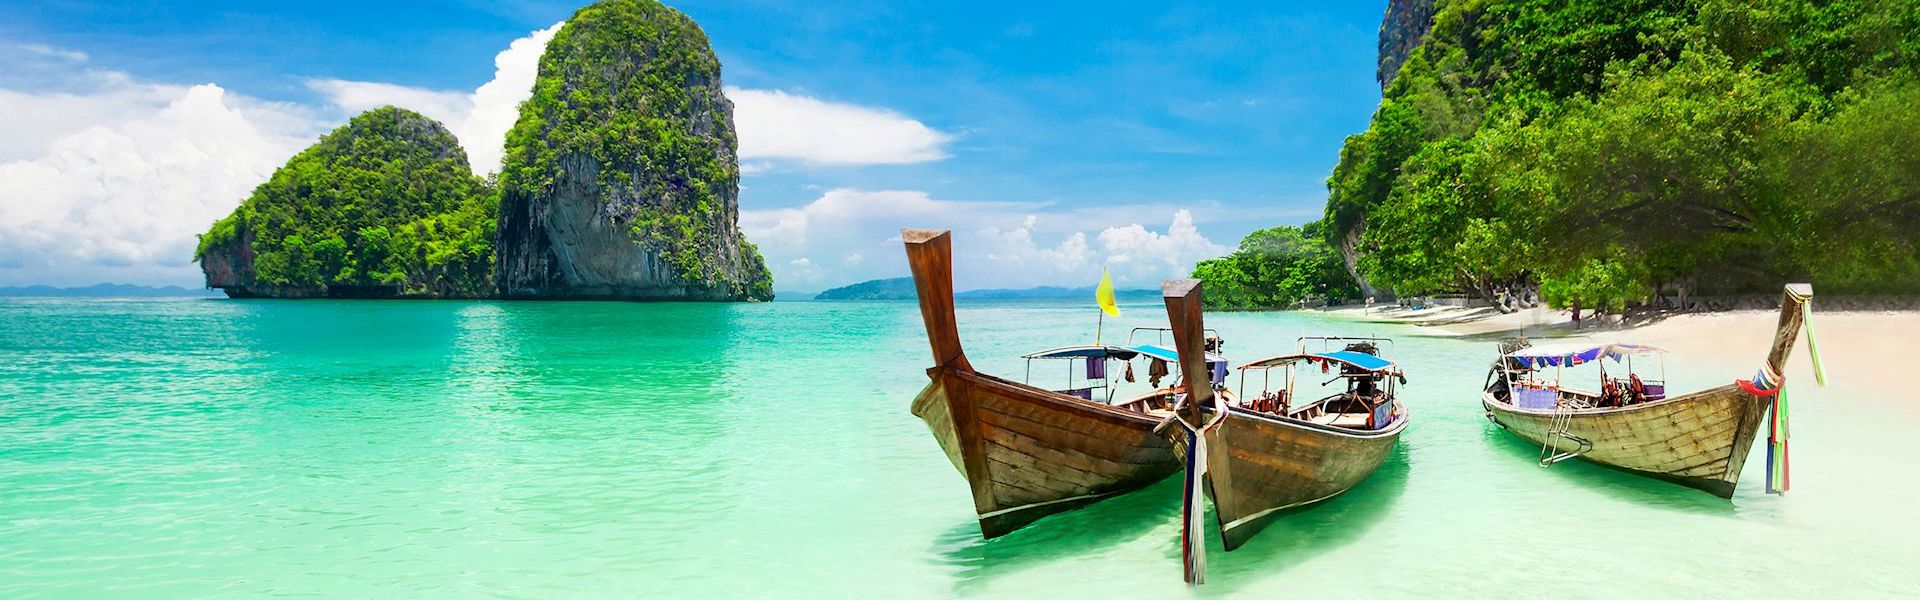 Vacaciones en Tailandia y Krabi